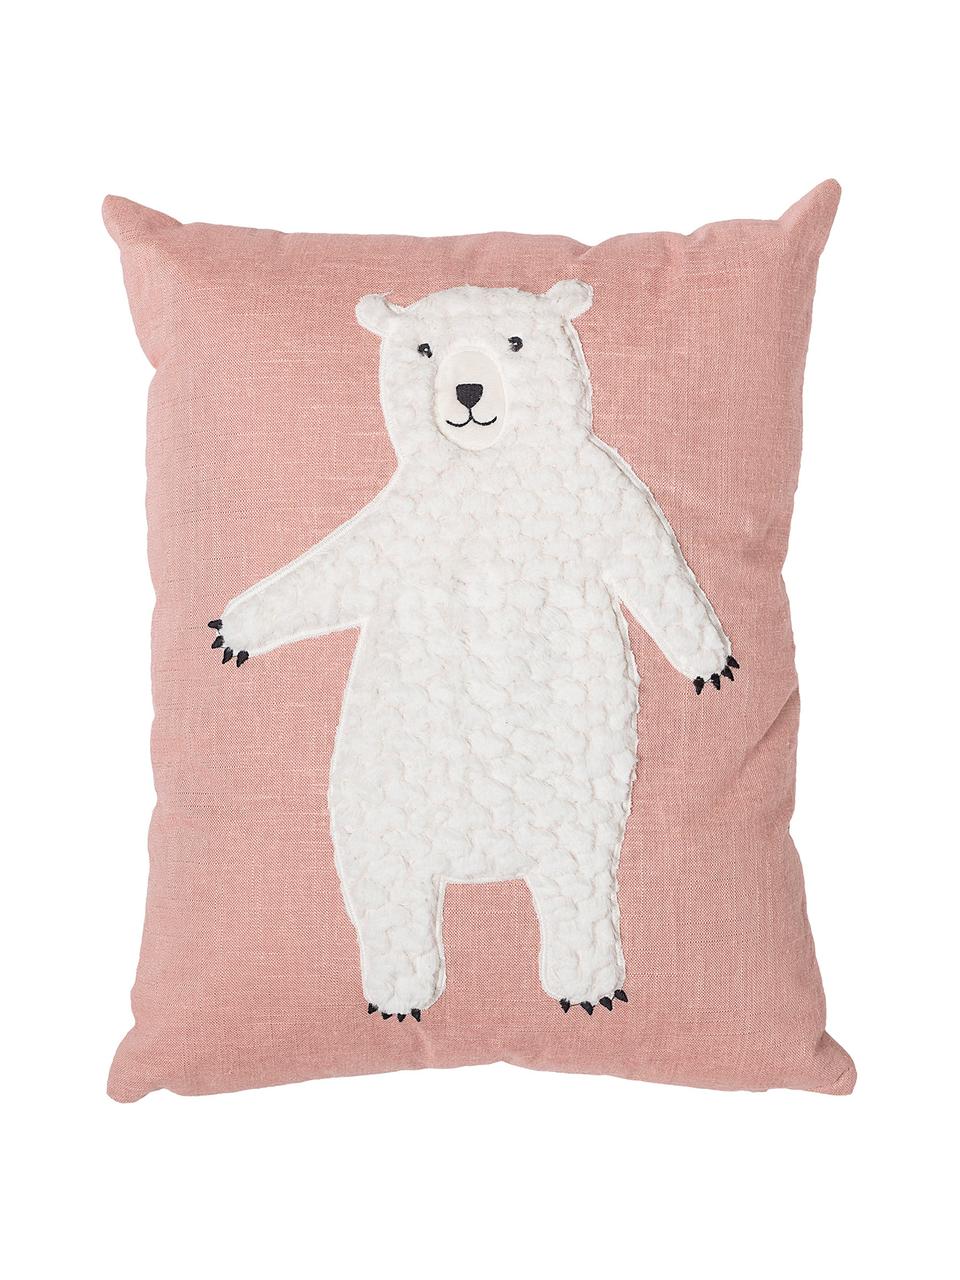 Kissen Bear, mit Inlett, Bezug: 70% Baumwolle, 30% Polyes, Rosa, Weiss, 40 x 50 cm